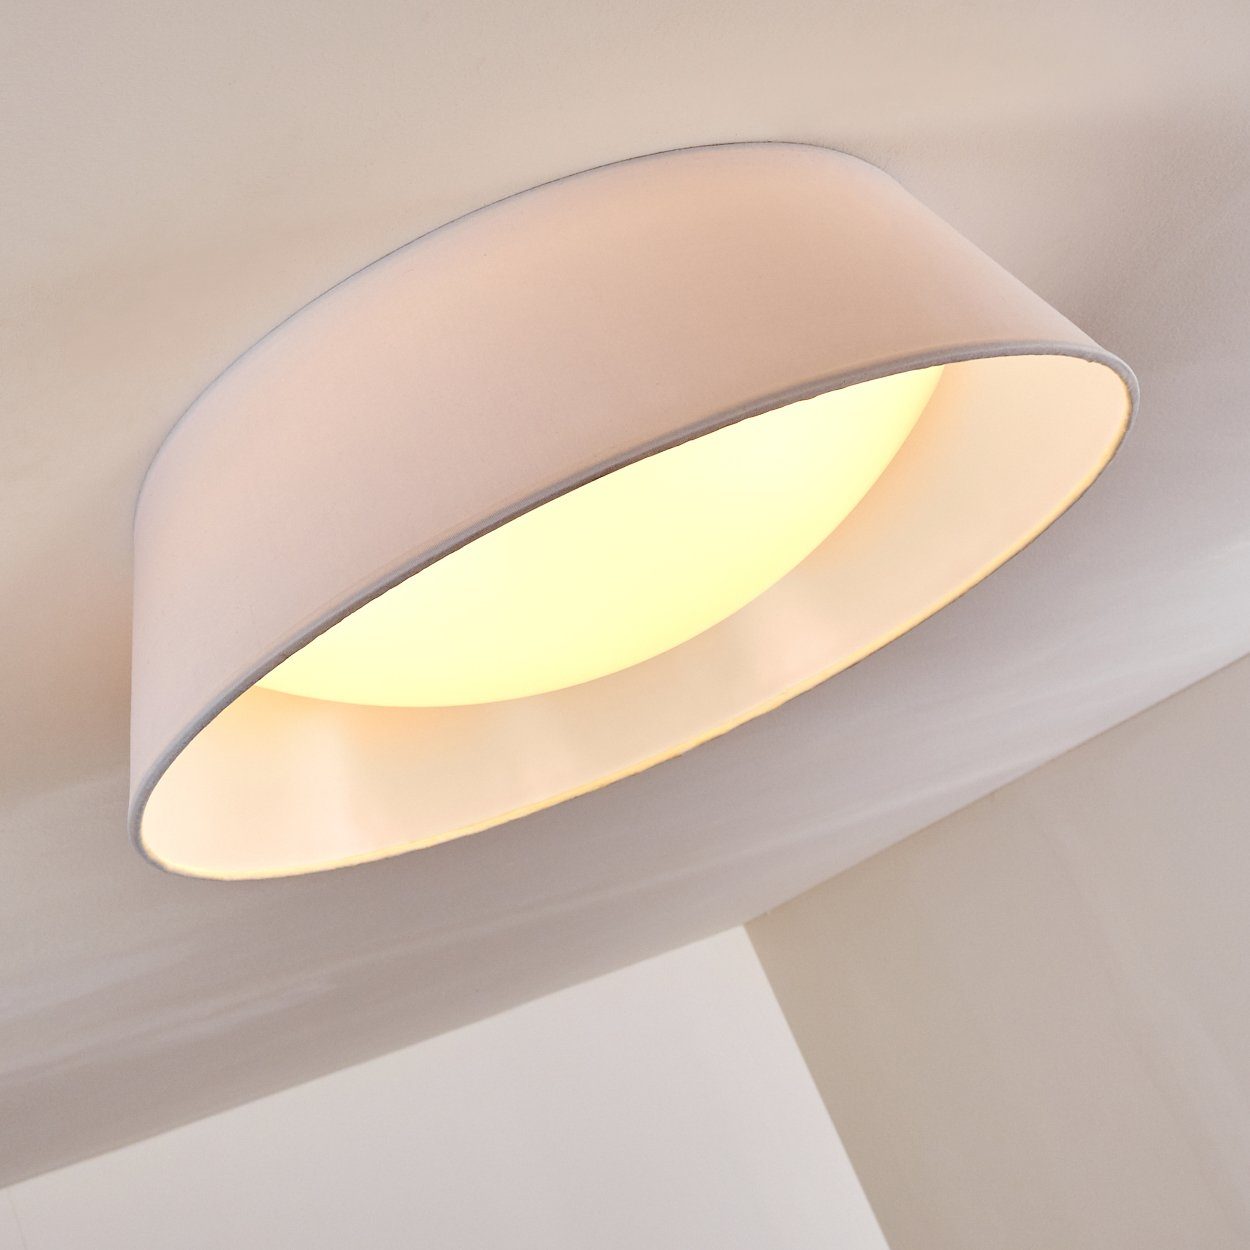 Deckenleuchte weiß LED Lampen Beleuchtung Wohn Design hofstein Decken Schlaf Zimmer Stoff